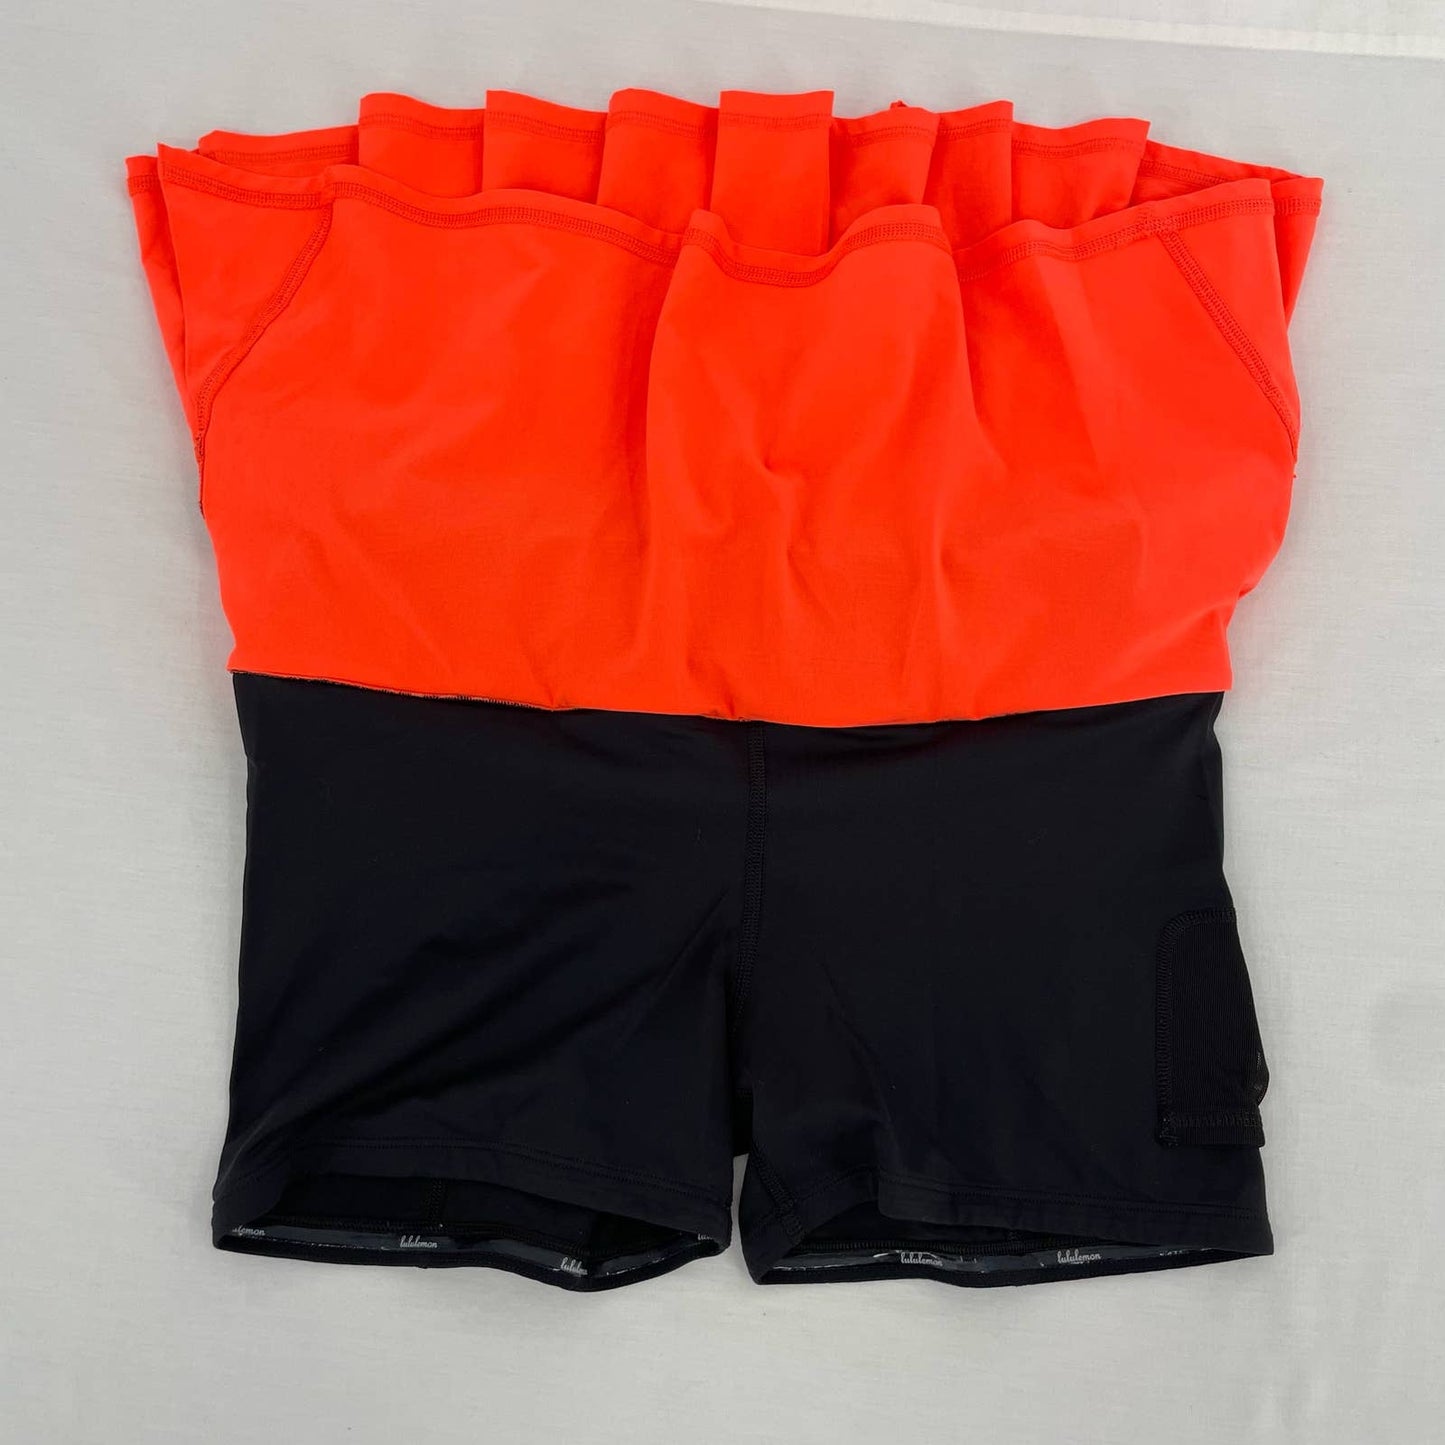 Lululemon Pace Setter Skirt Light Flare Tonka Stripe Cashew Blaze Orange Tennis Skort Size 6